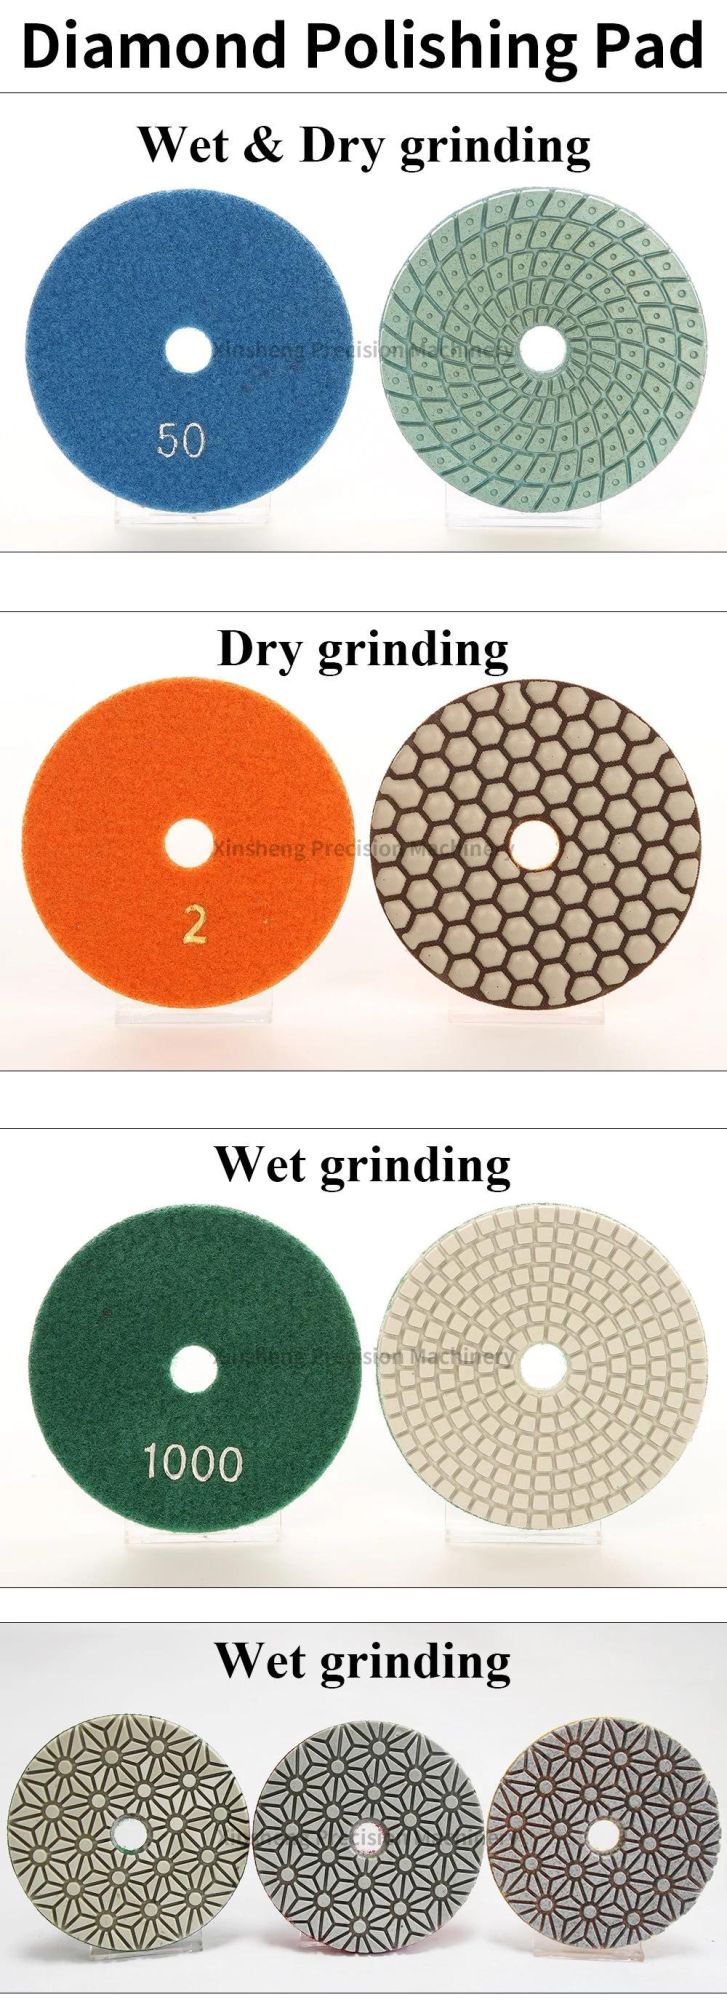 Wholesales Price Diamond Wet Polishing Pad on Circular Pad